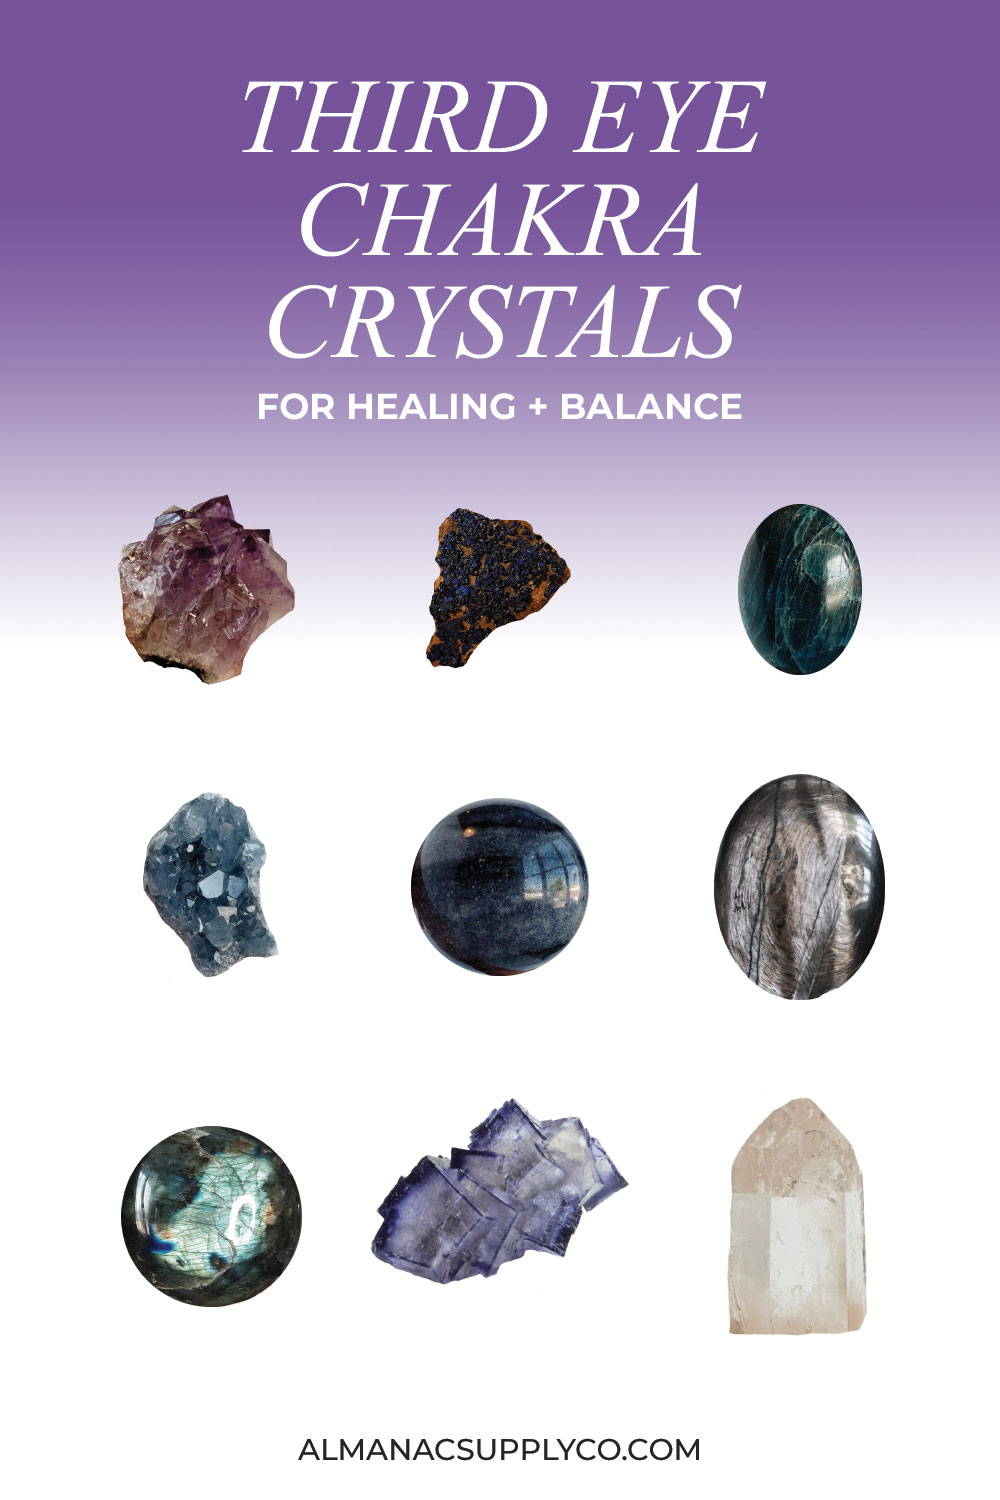 Third Eye Chakra Crystals for Healing + Balance